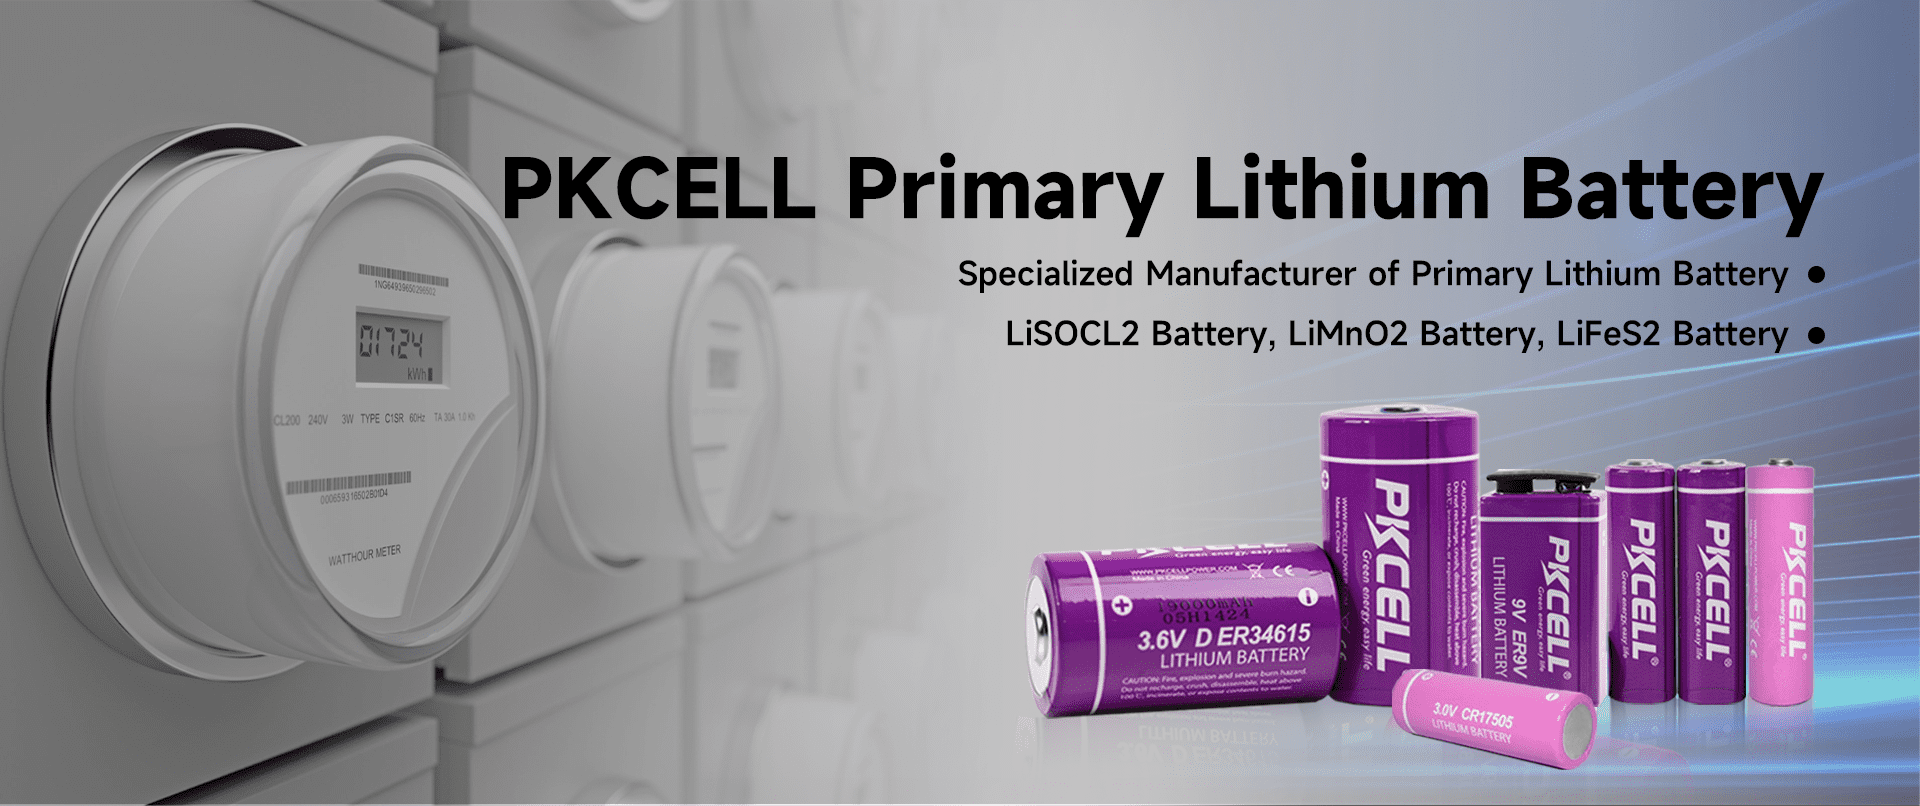 Specializovaný výrobce primárních lithiových baterií